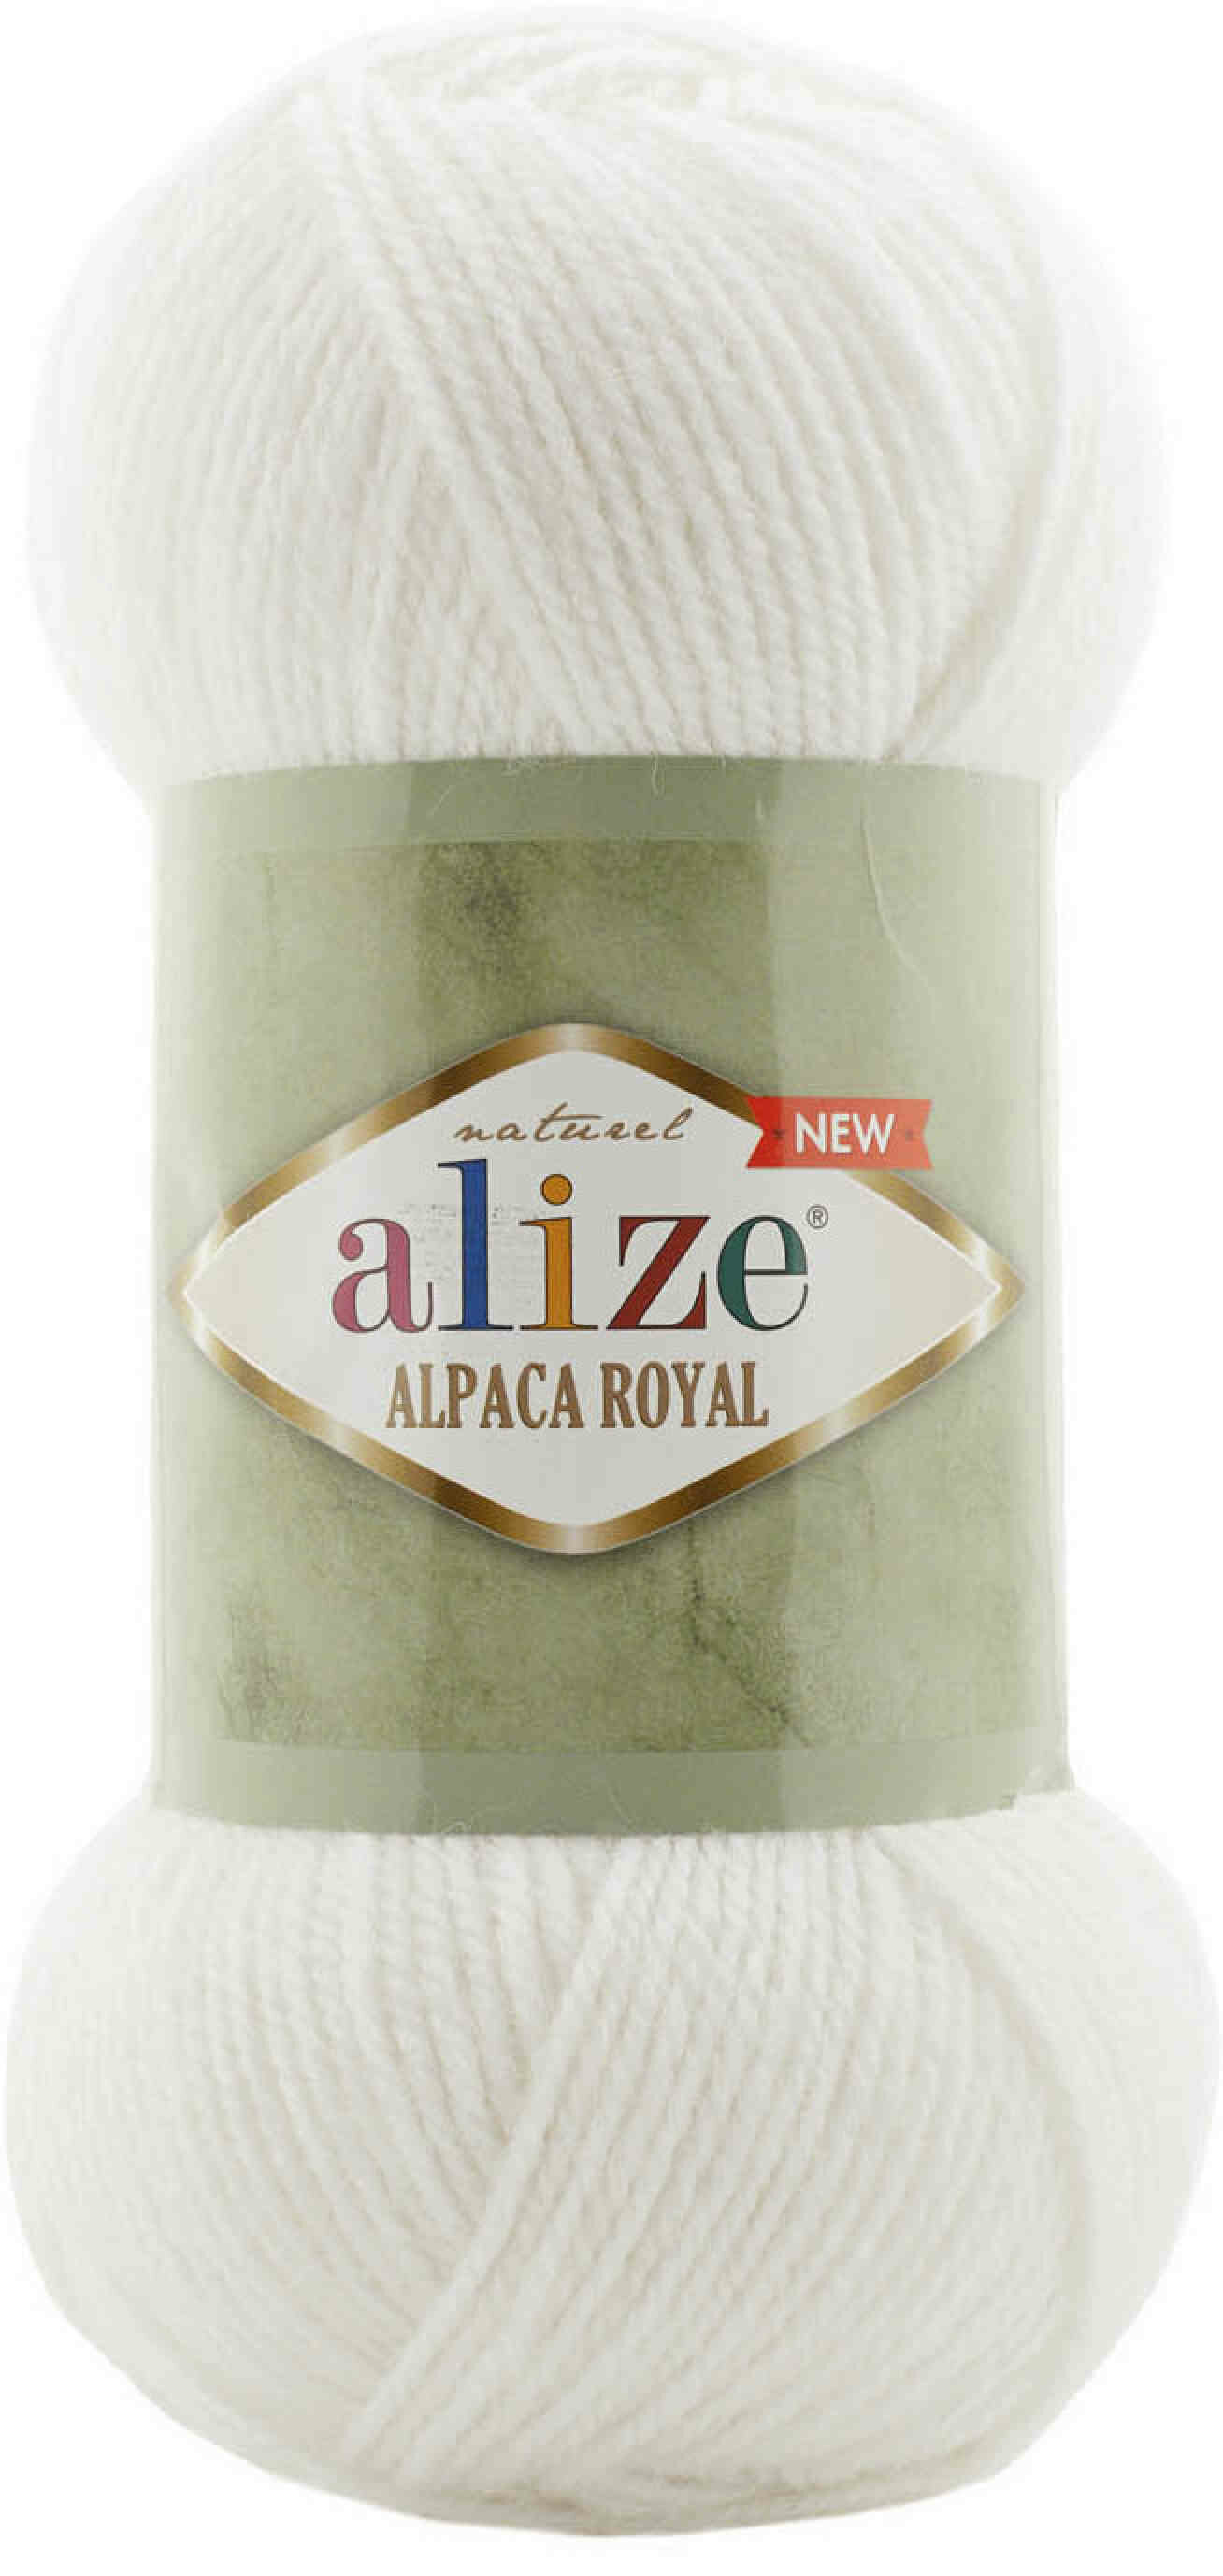 Пряжа Alize Alpaca Royal NEW белый (55), 55%акрил/30%шерсть/15%альпака, 250м, 100г, 1шт